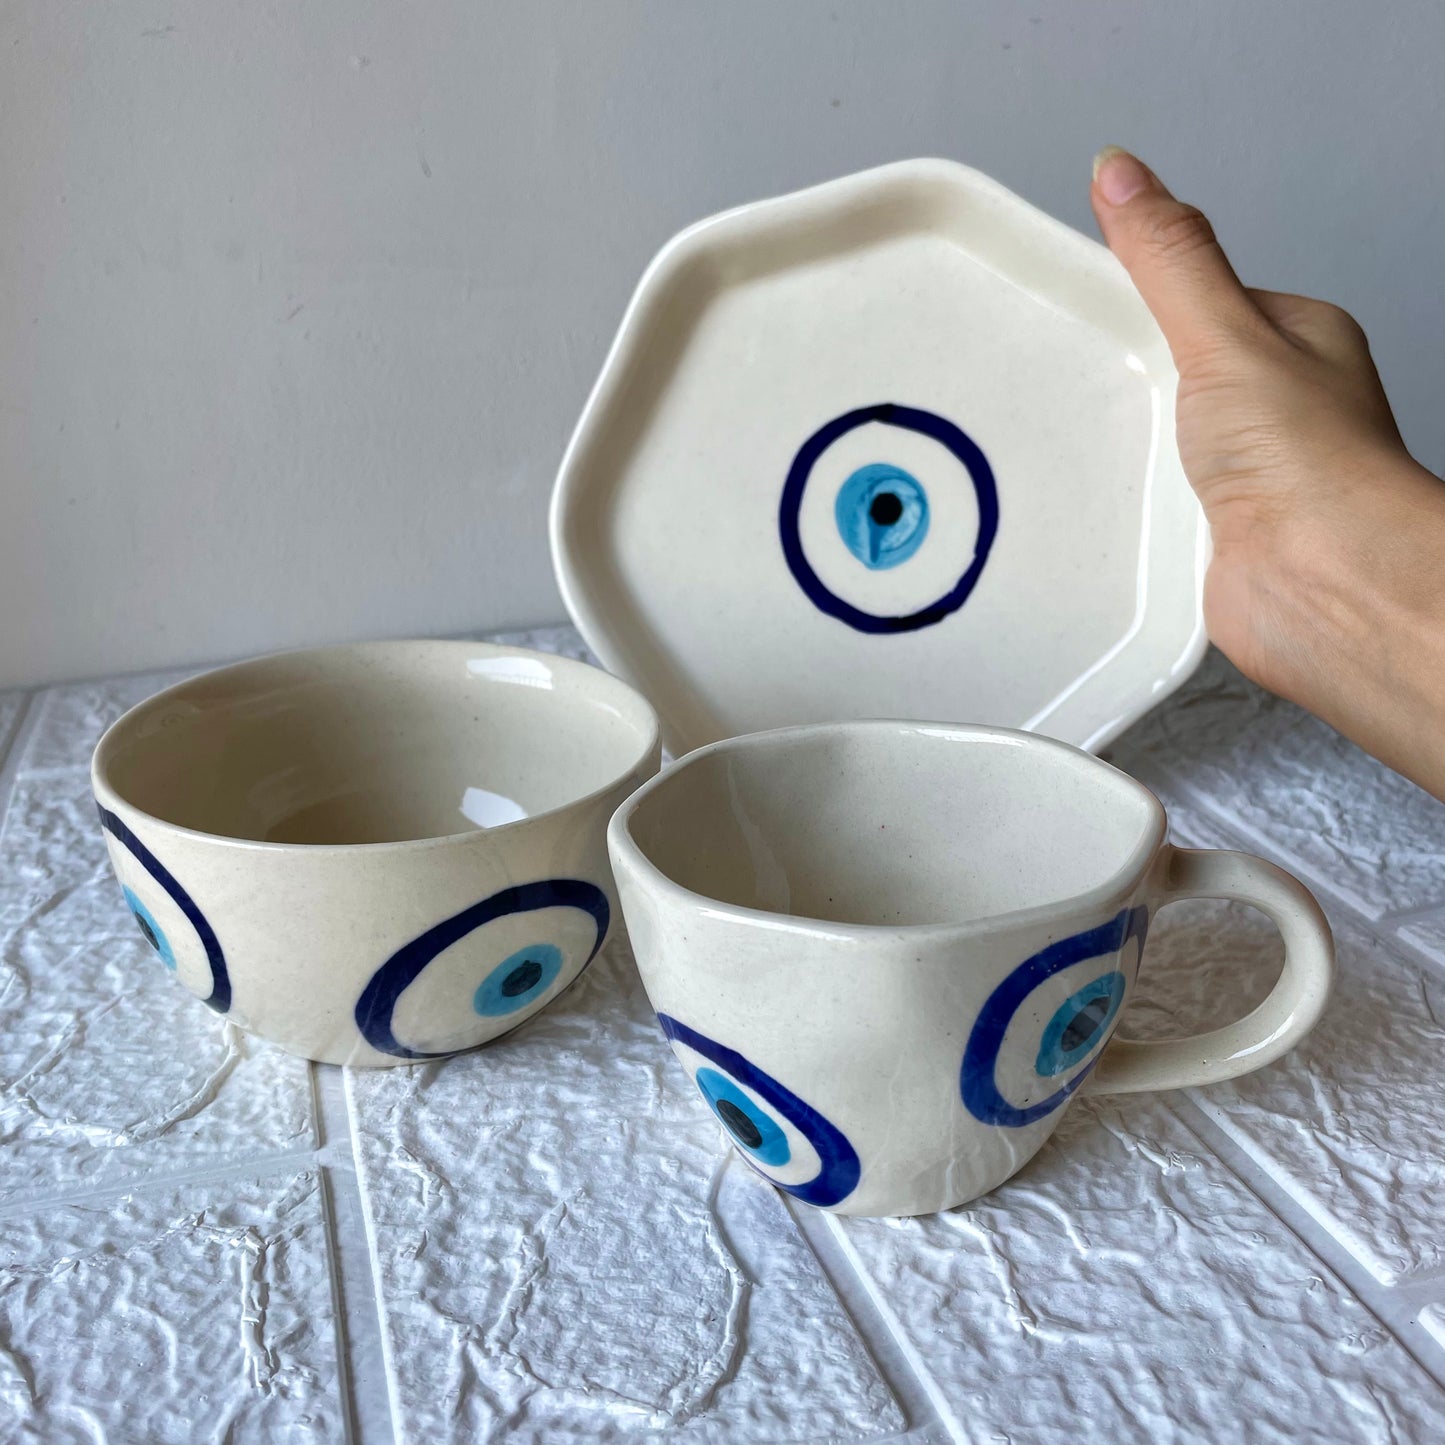 Evil eye breakfast sets